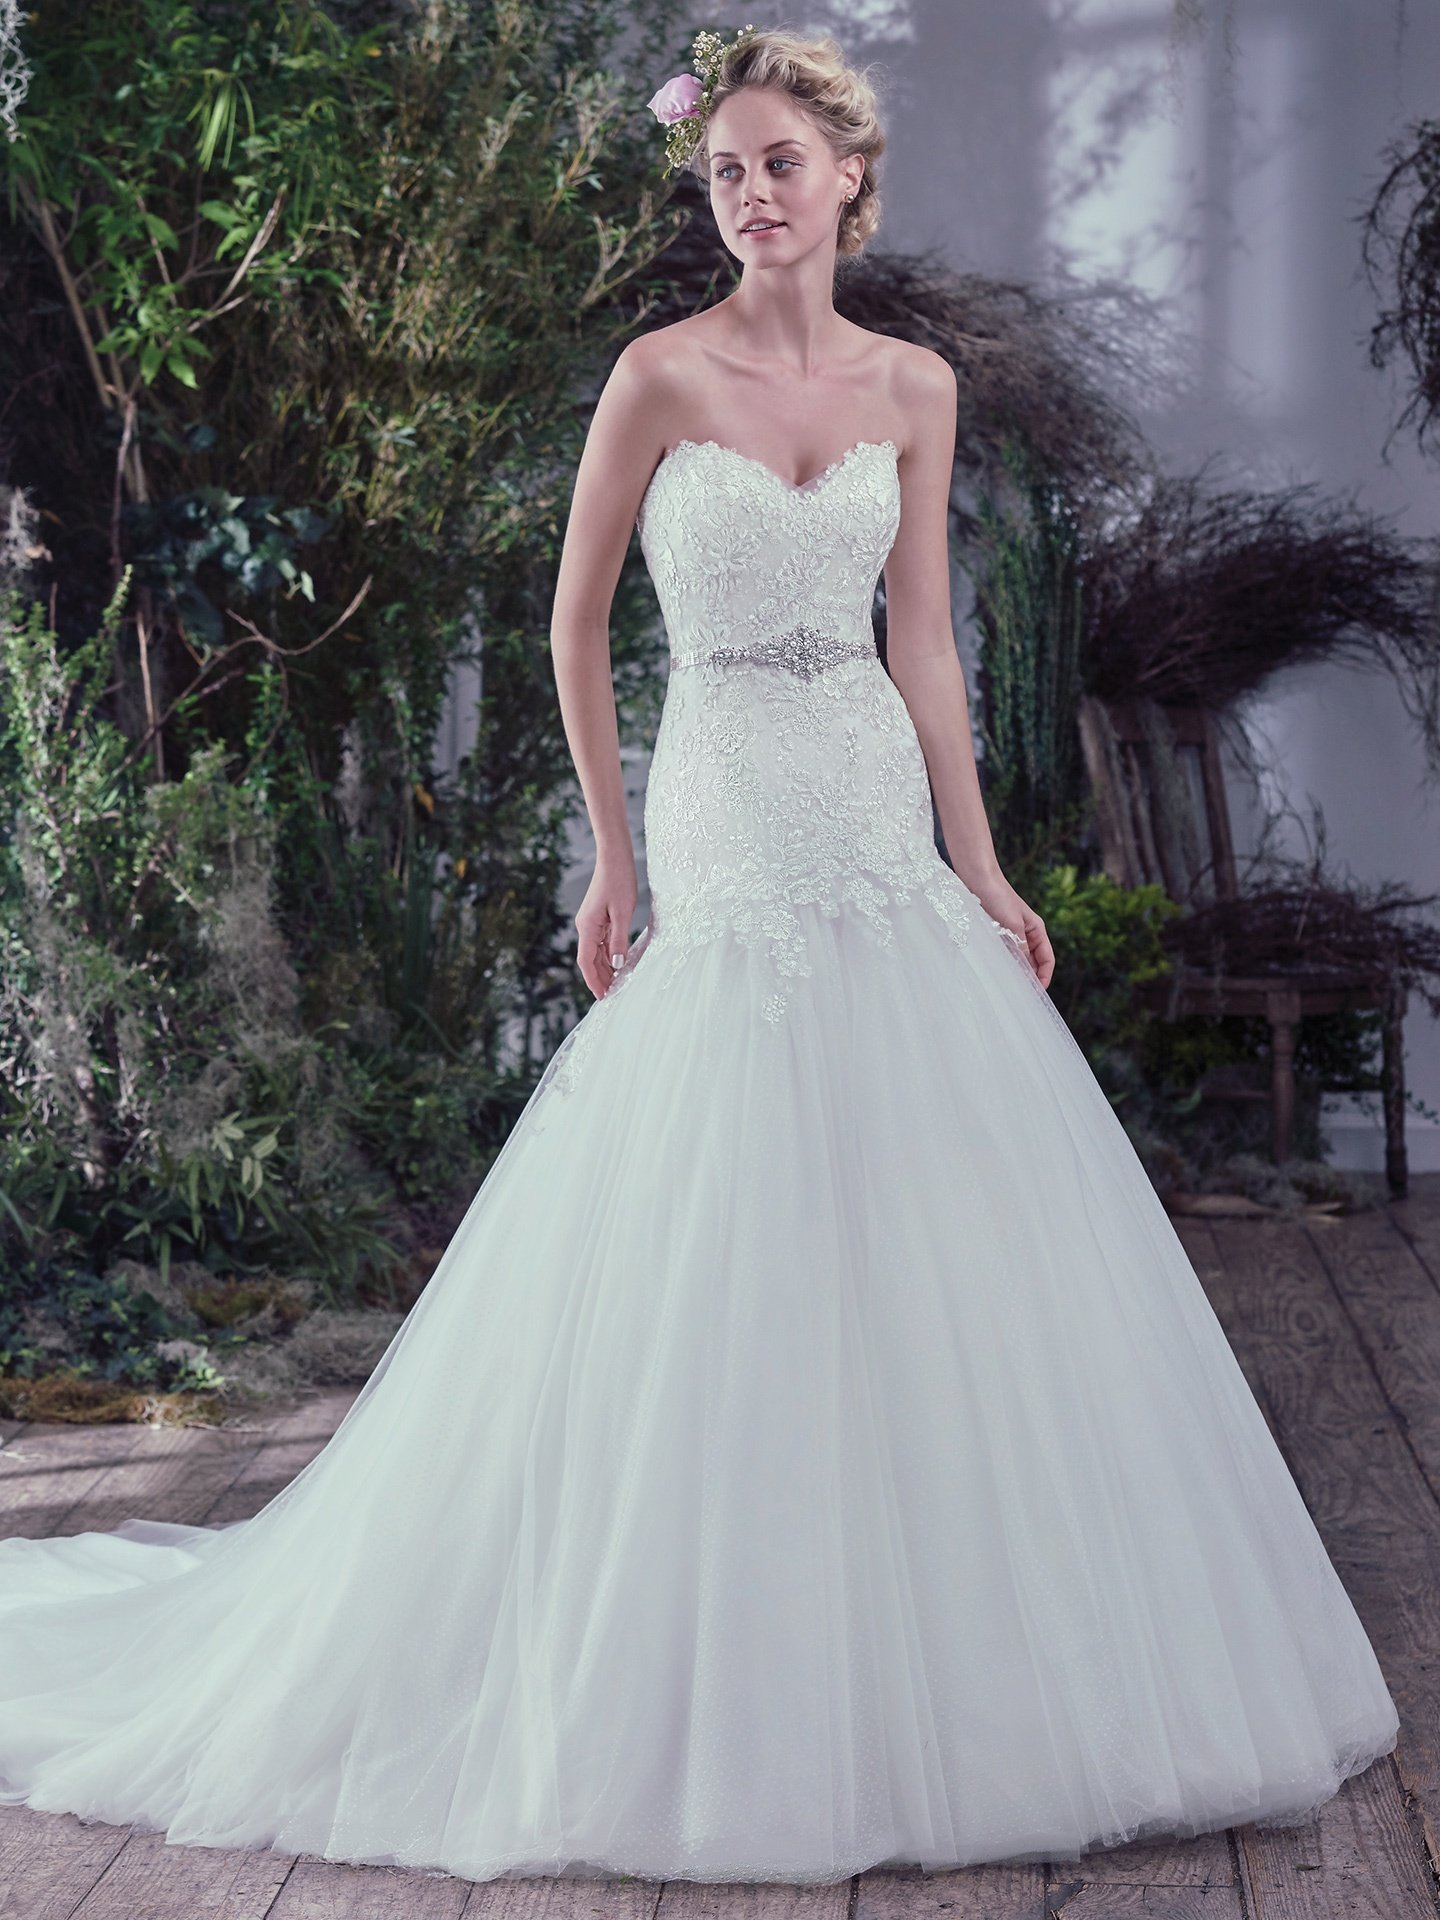 Oksana Wedding Dress Bridal Gown